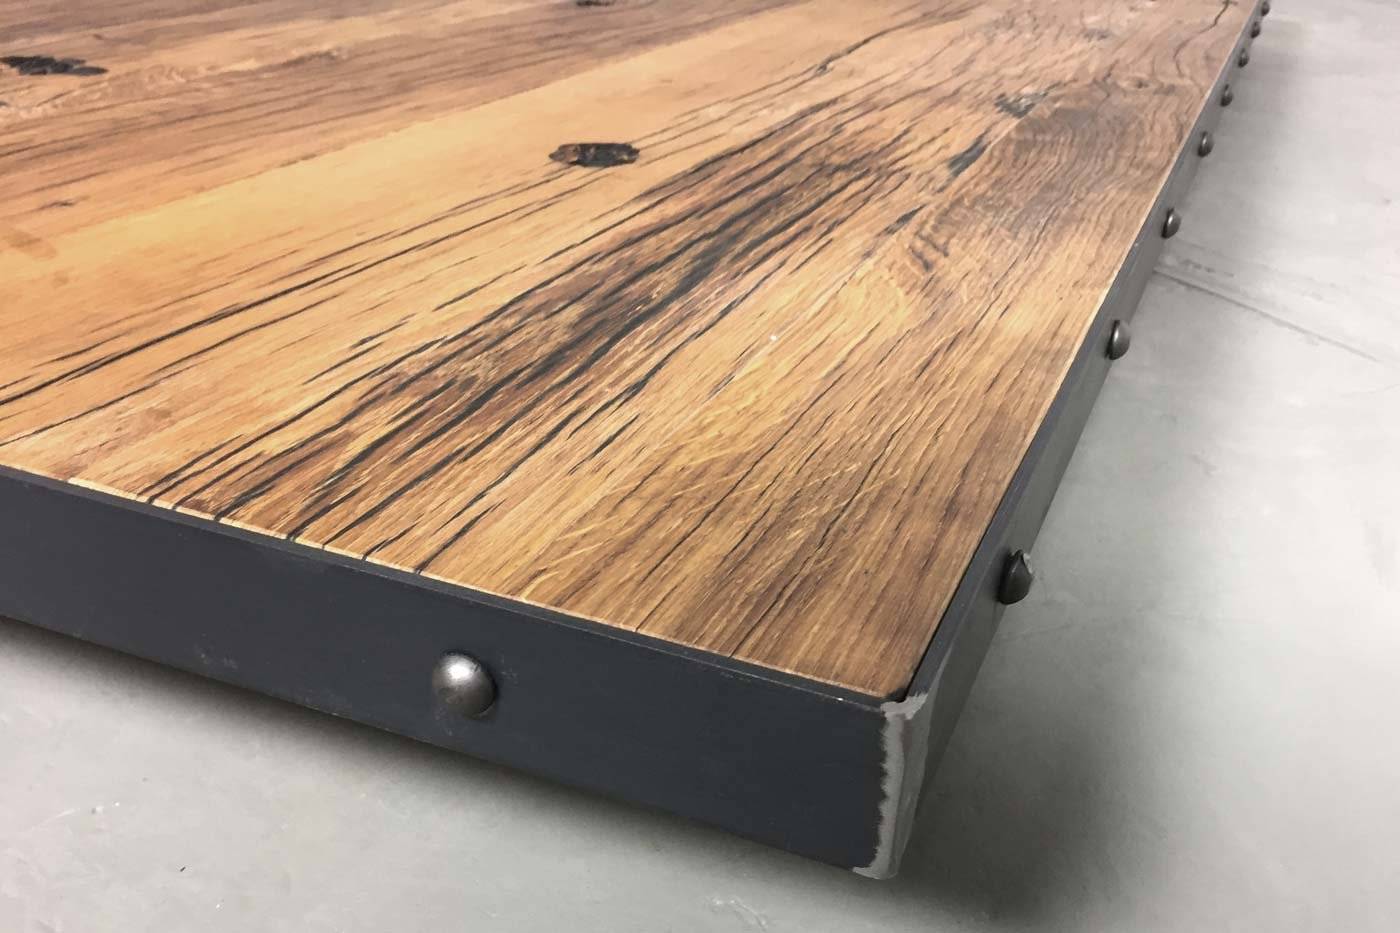 alledaags Aanbeveling As Eiken oud houten tafelblad met ruw staal – Options Meubelen